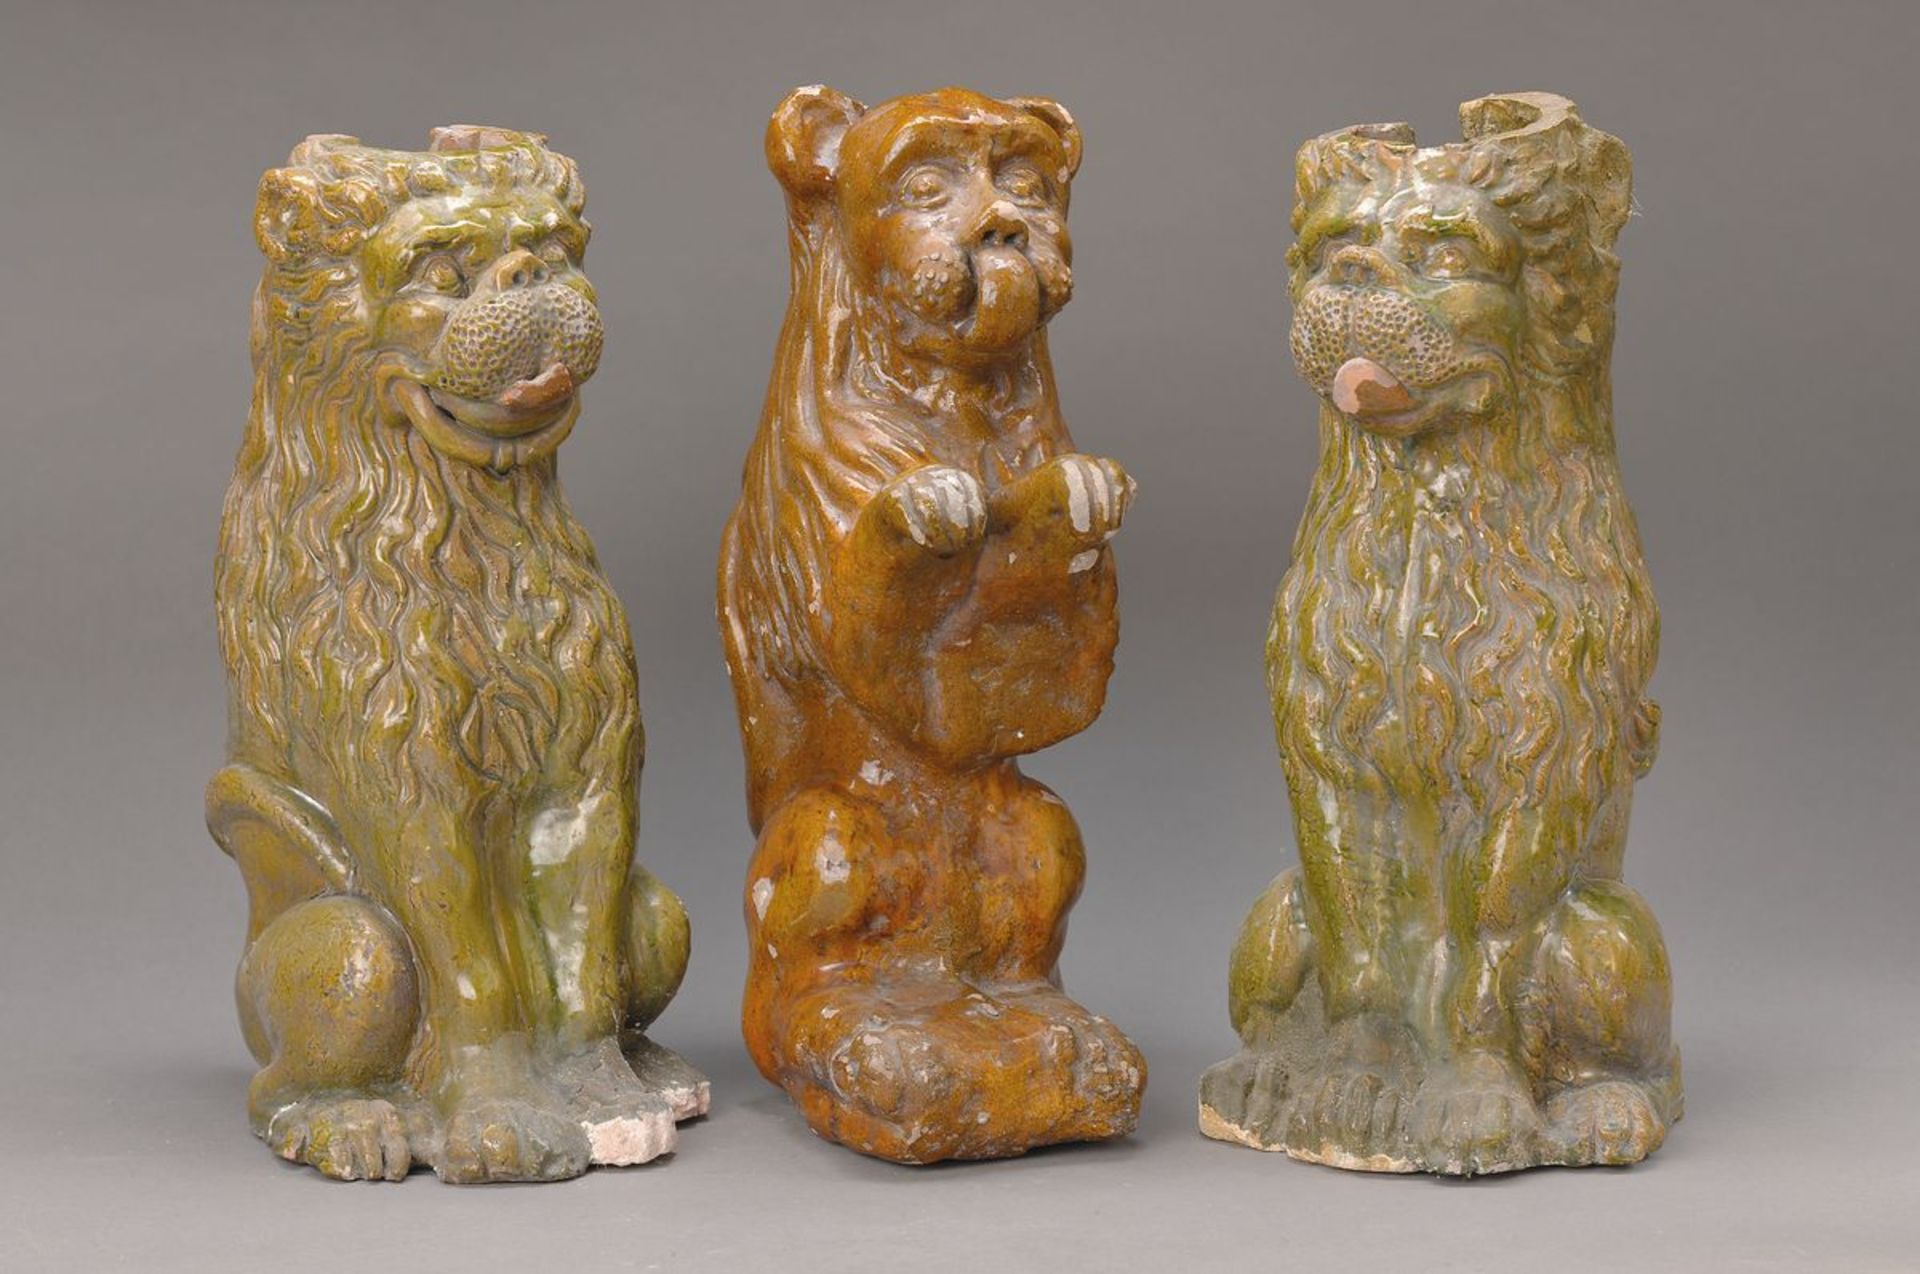 3 Schutzhüllen für Öfen, süddeutsch, um 1730-50, Beine in Form von sitzenden Löwen, Keramik,